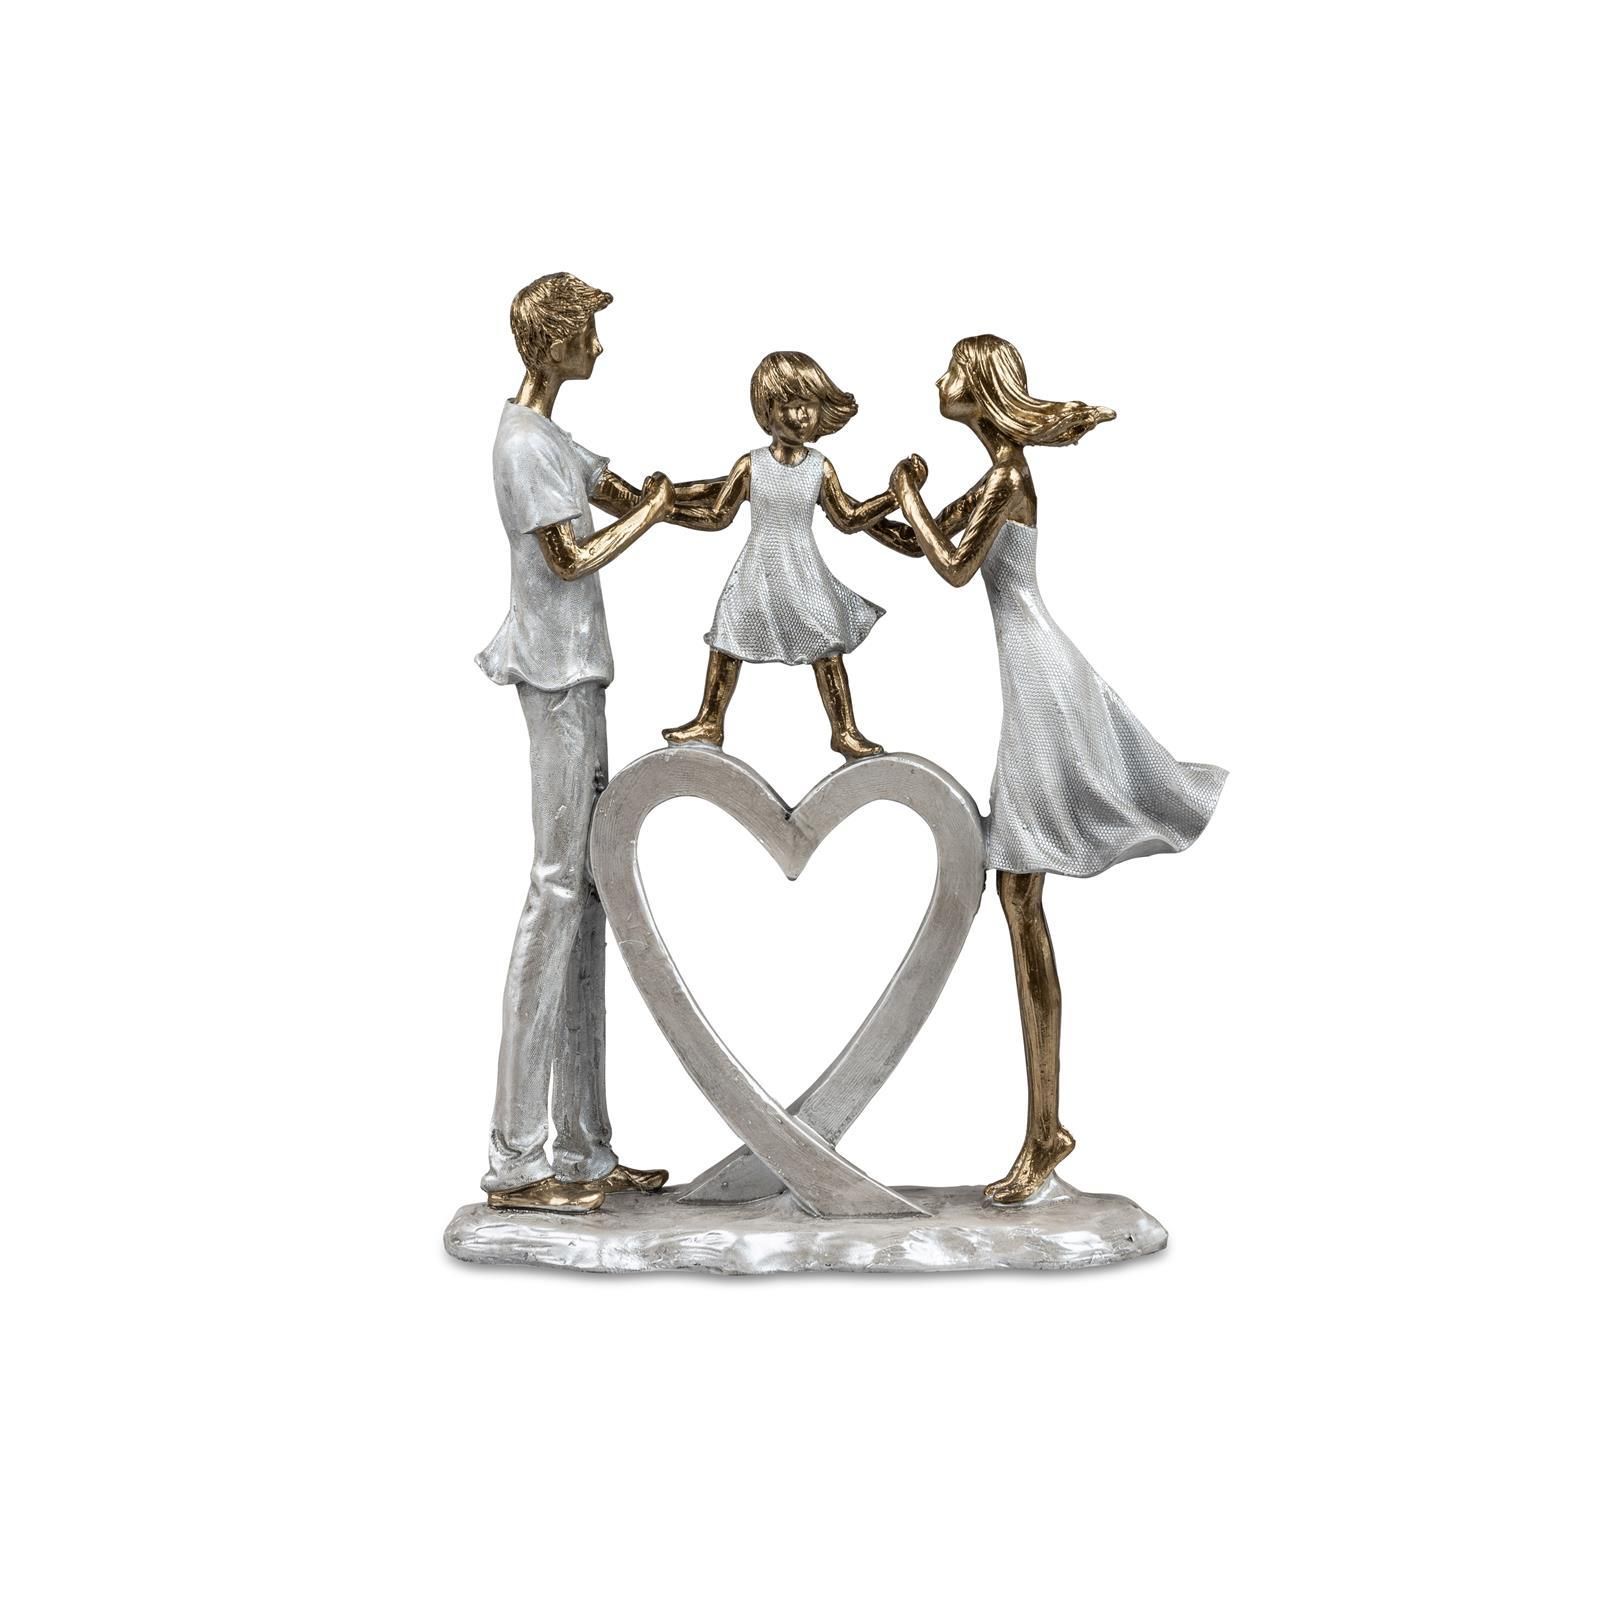 Familie mit Herz 26 cm aus Kunststein gefertigt, gold metallic Oberlfäche 